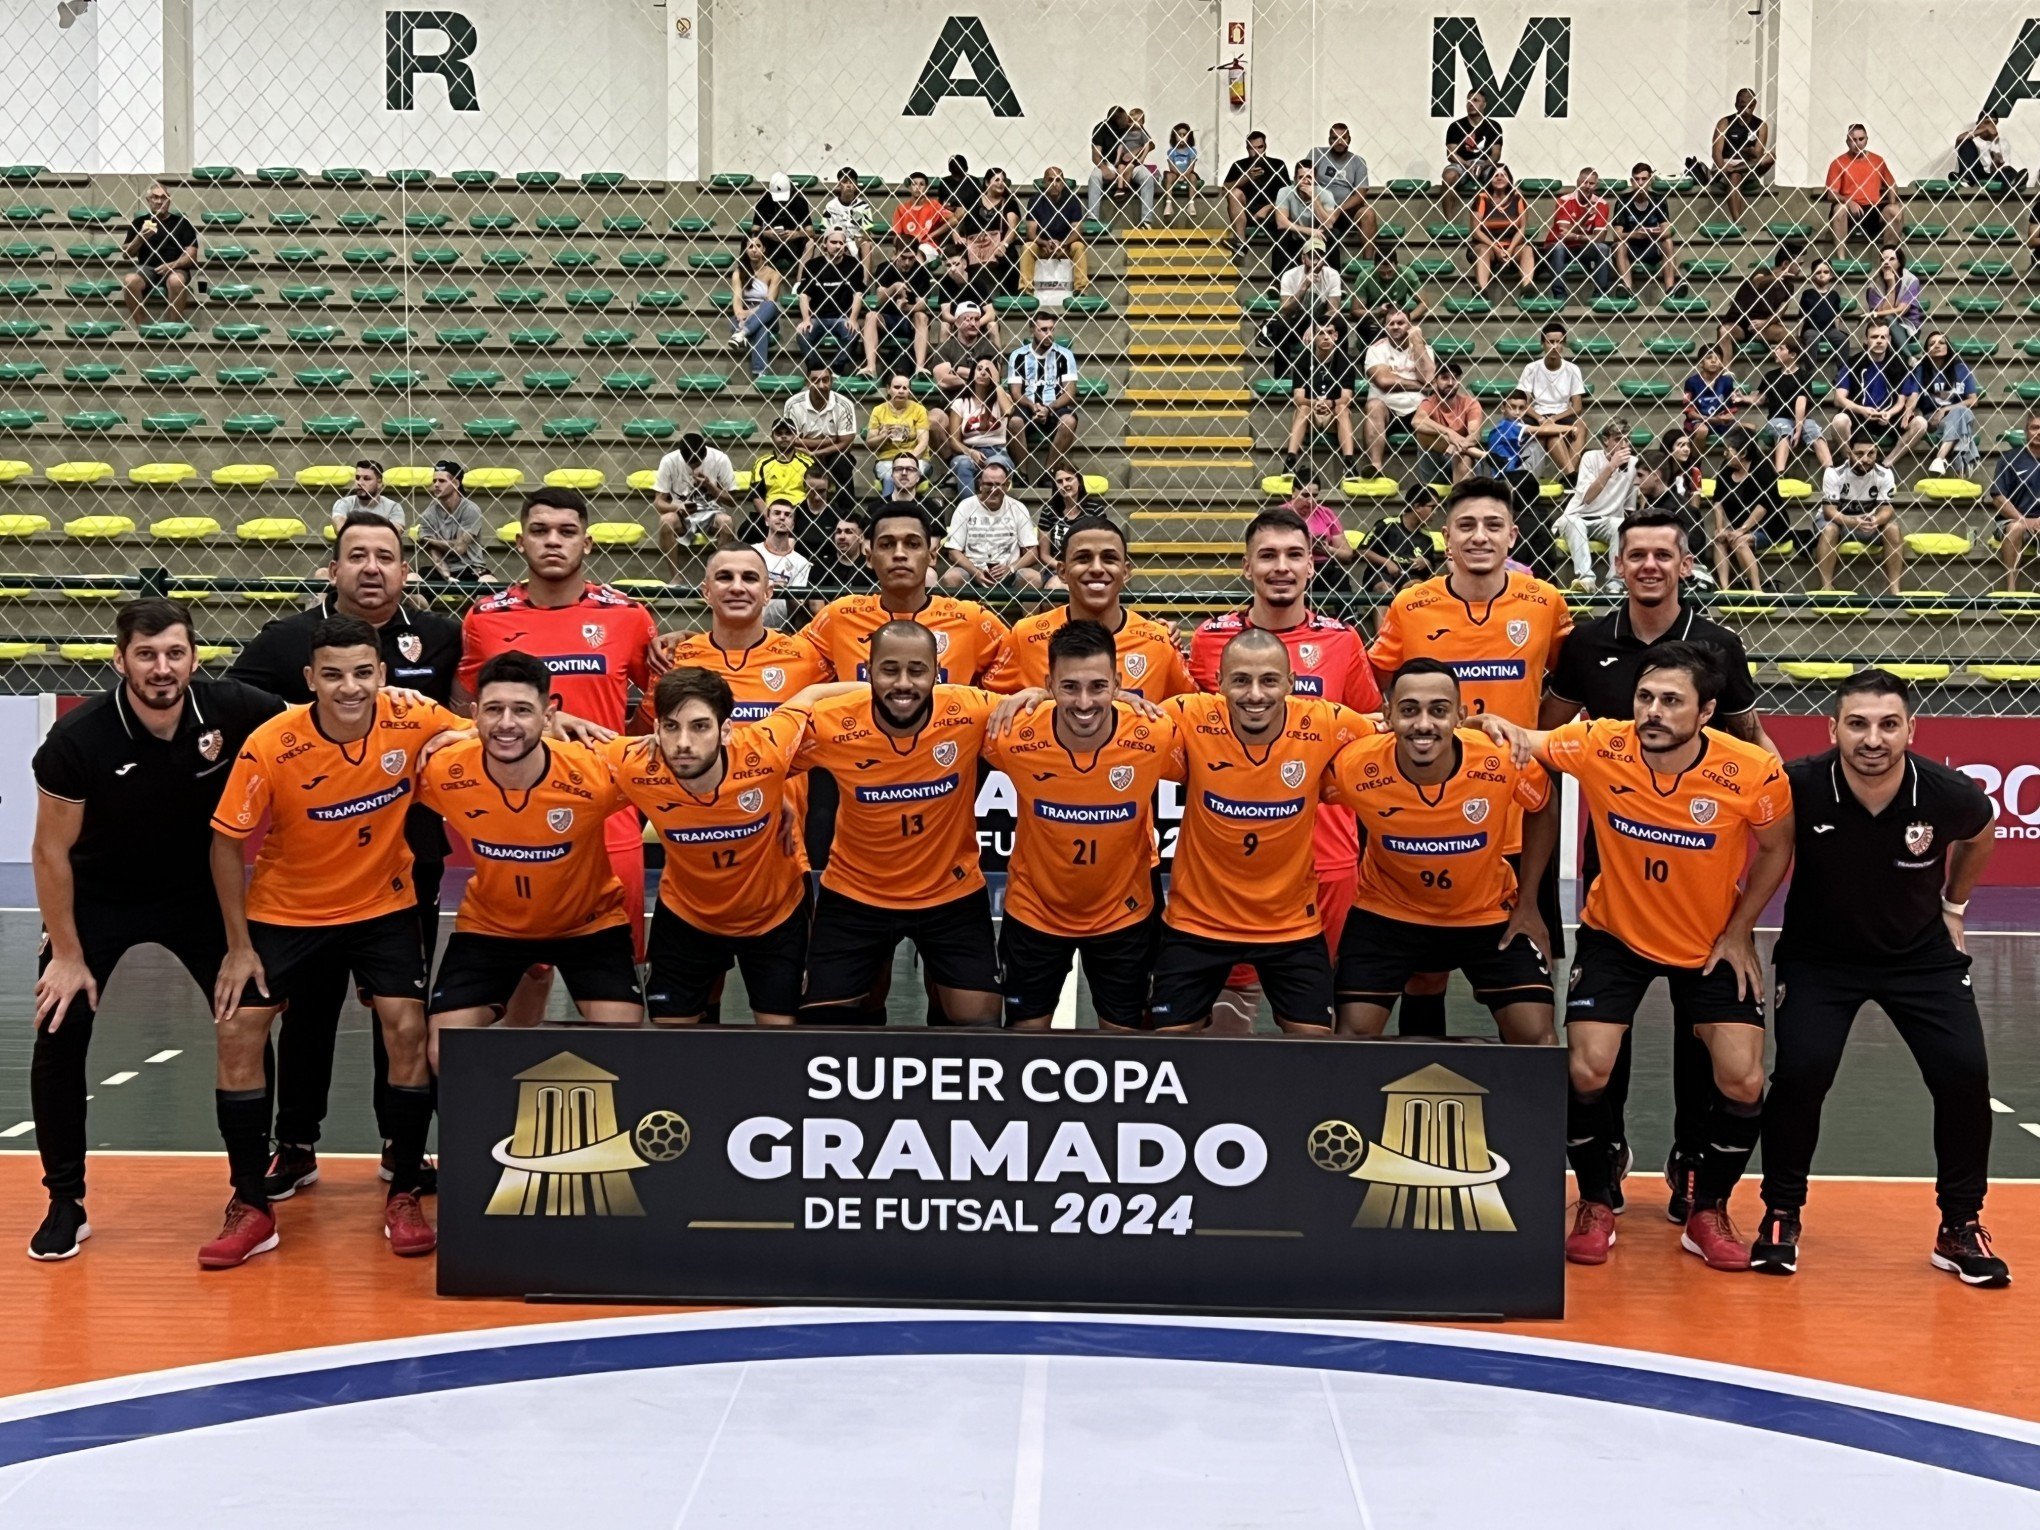 Confira os resultados dos primeiros jogos da Super Copa Gramado de Futsal